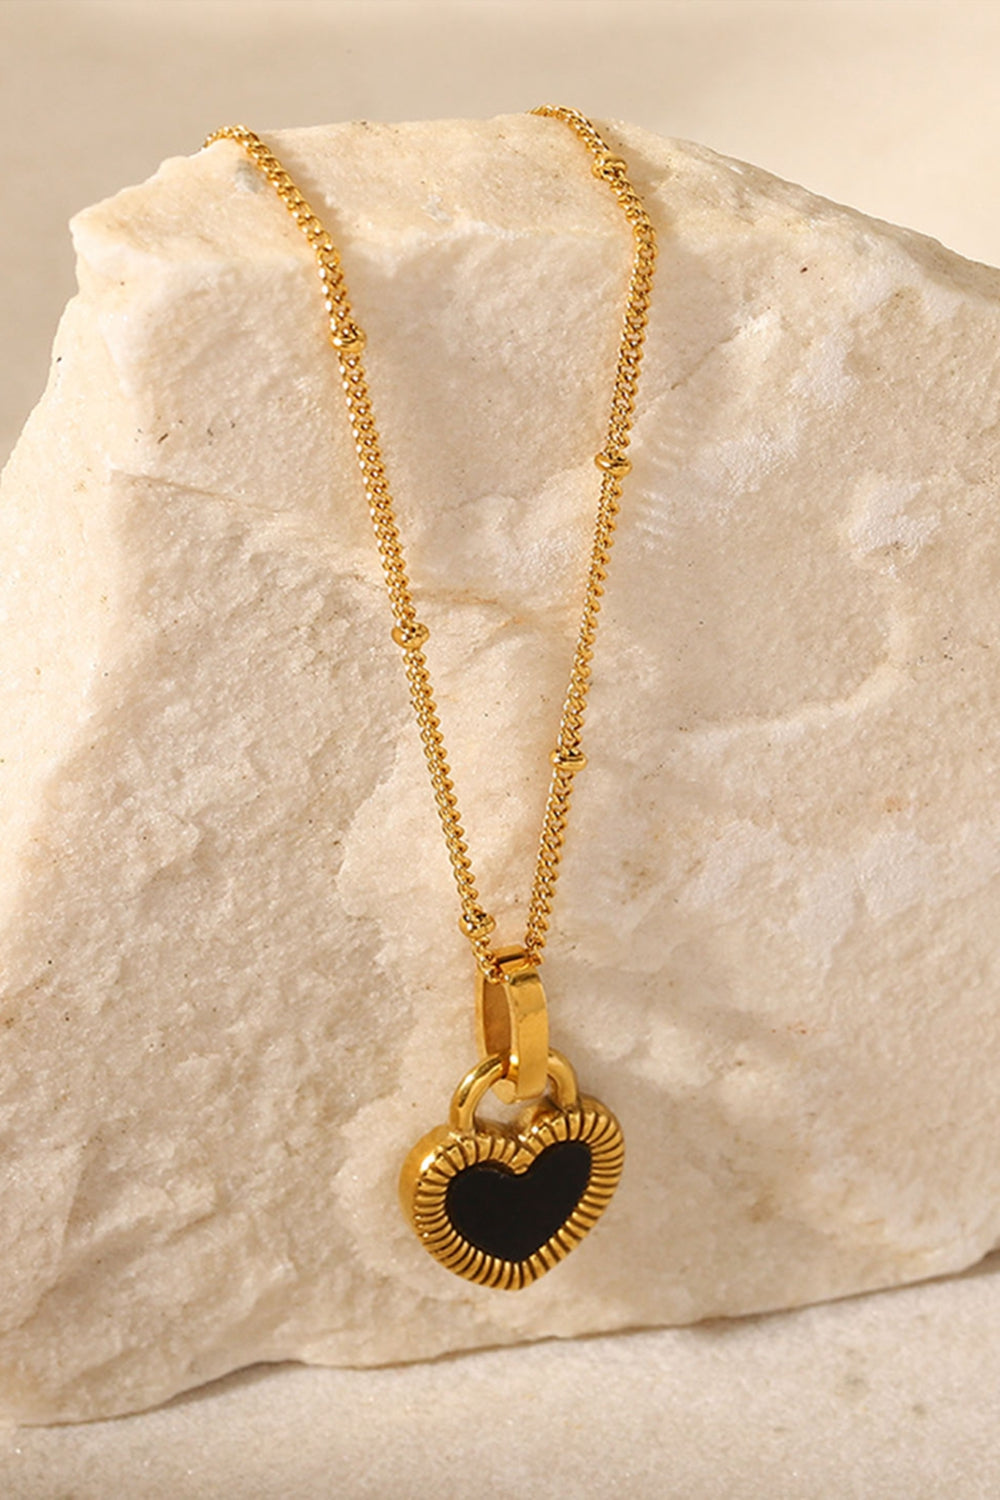 Unique & Chic Black Heart Pendant Necklace